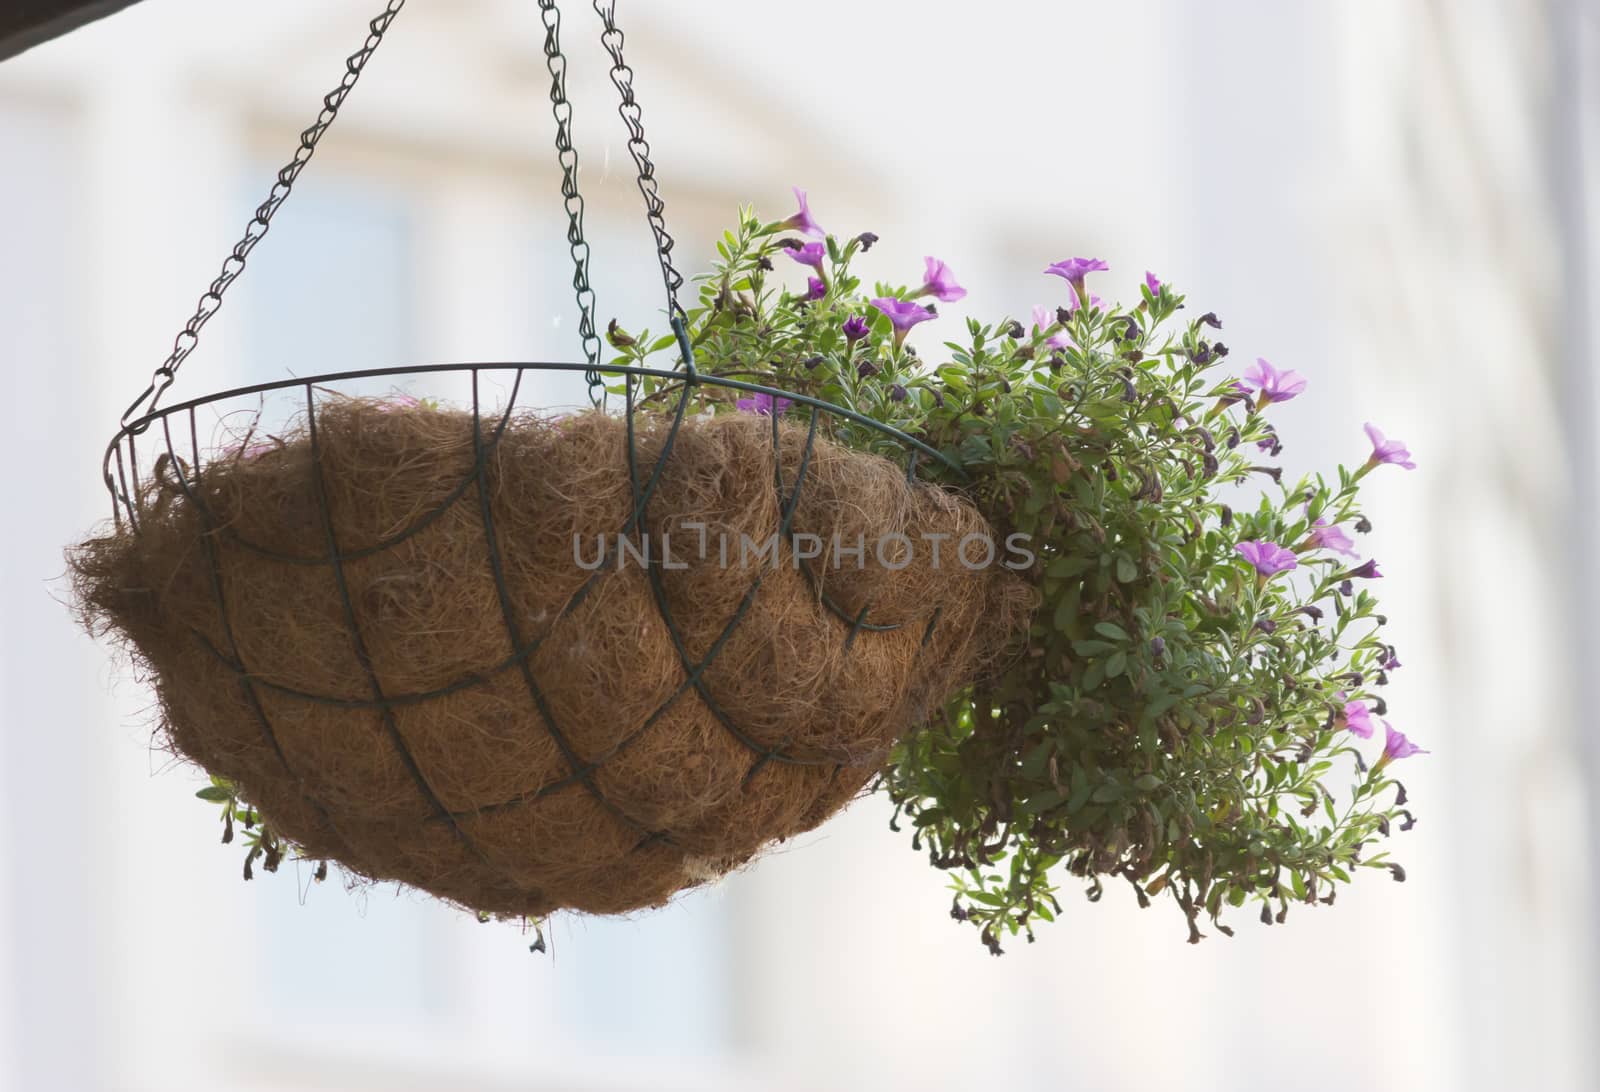 flower pot with purple flowers  by liwei12